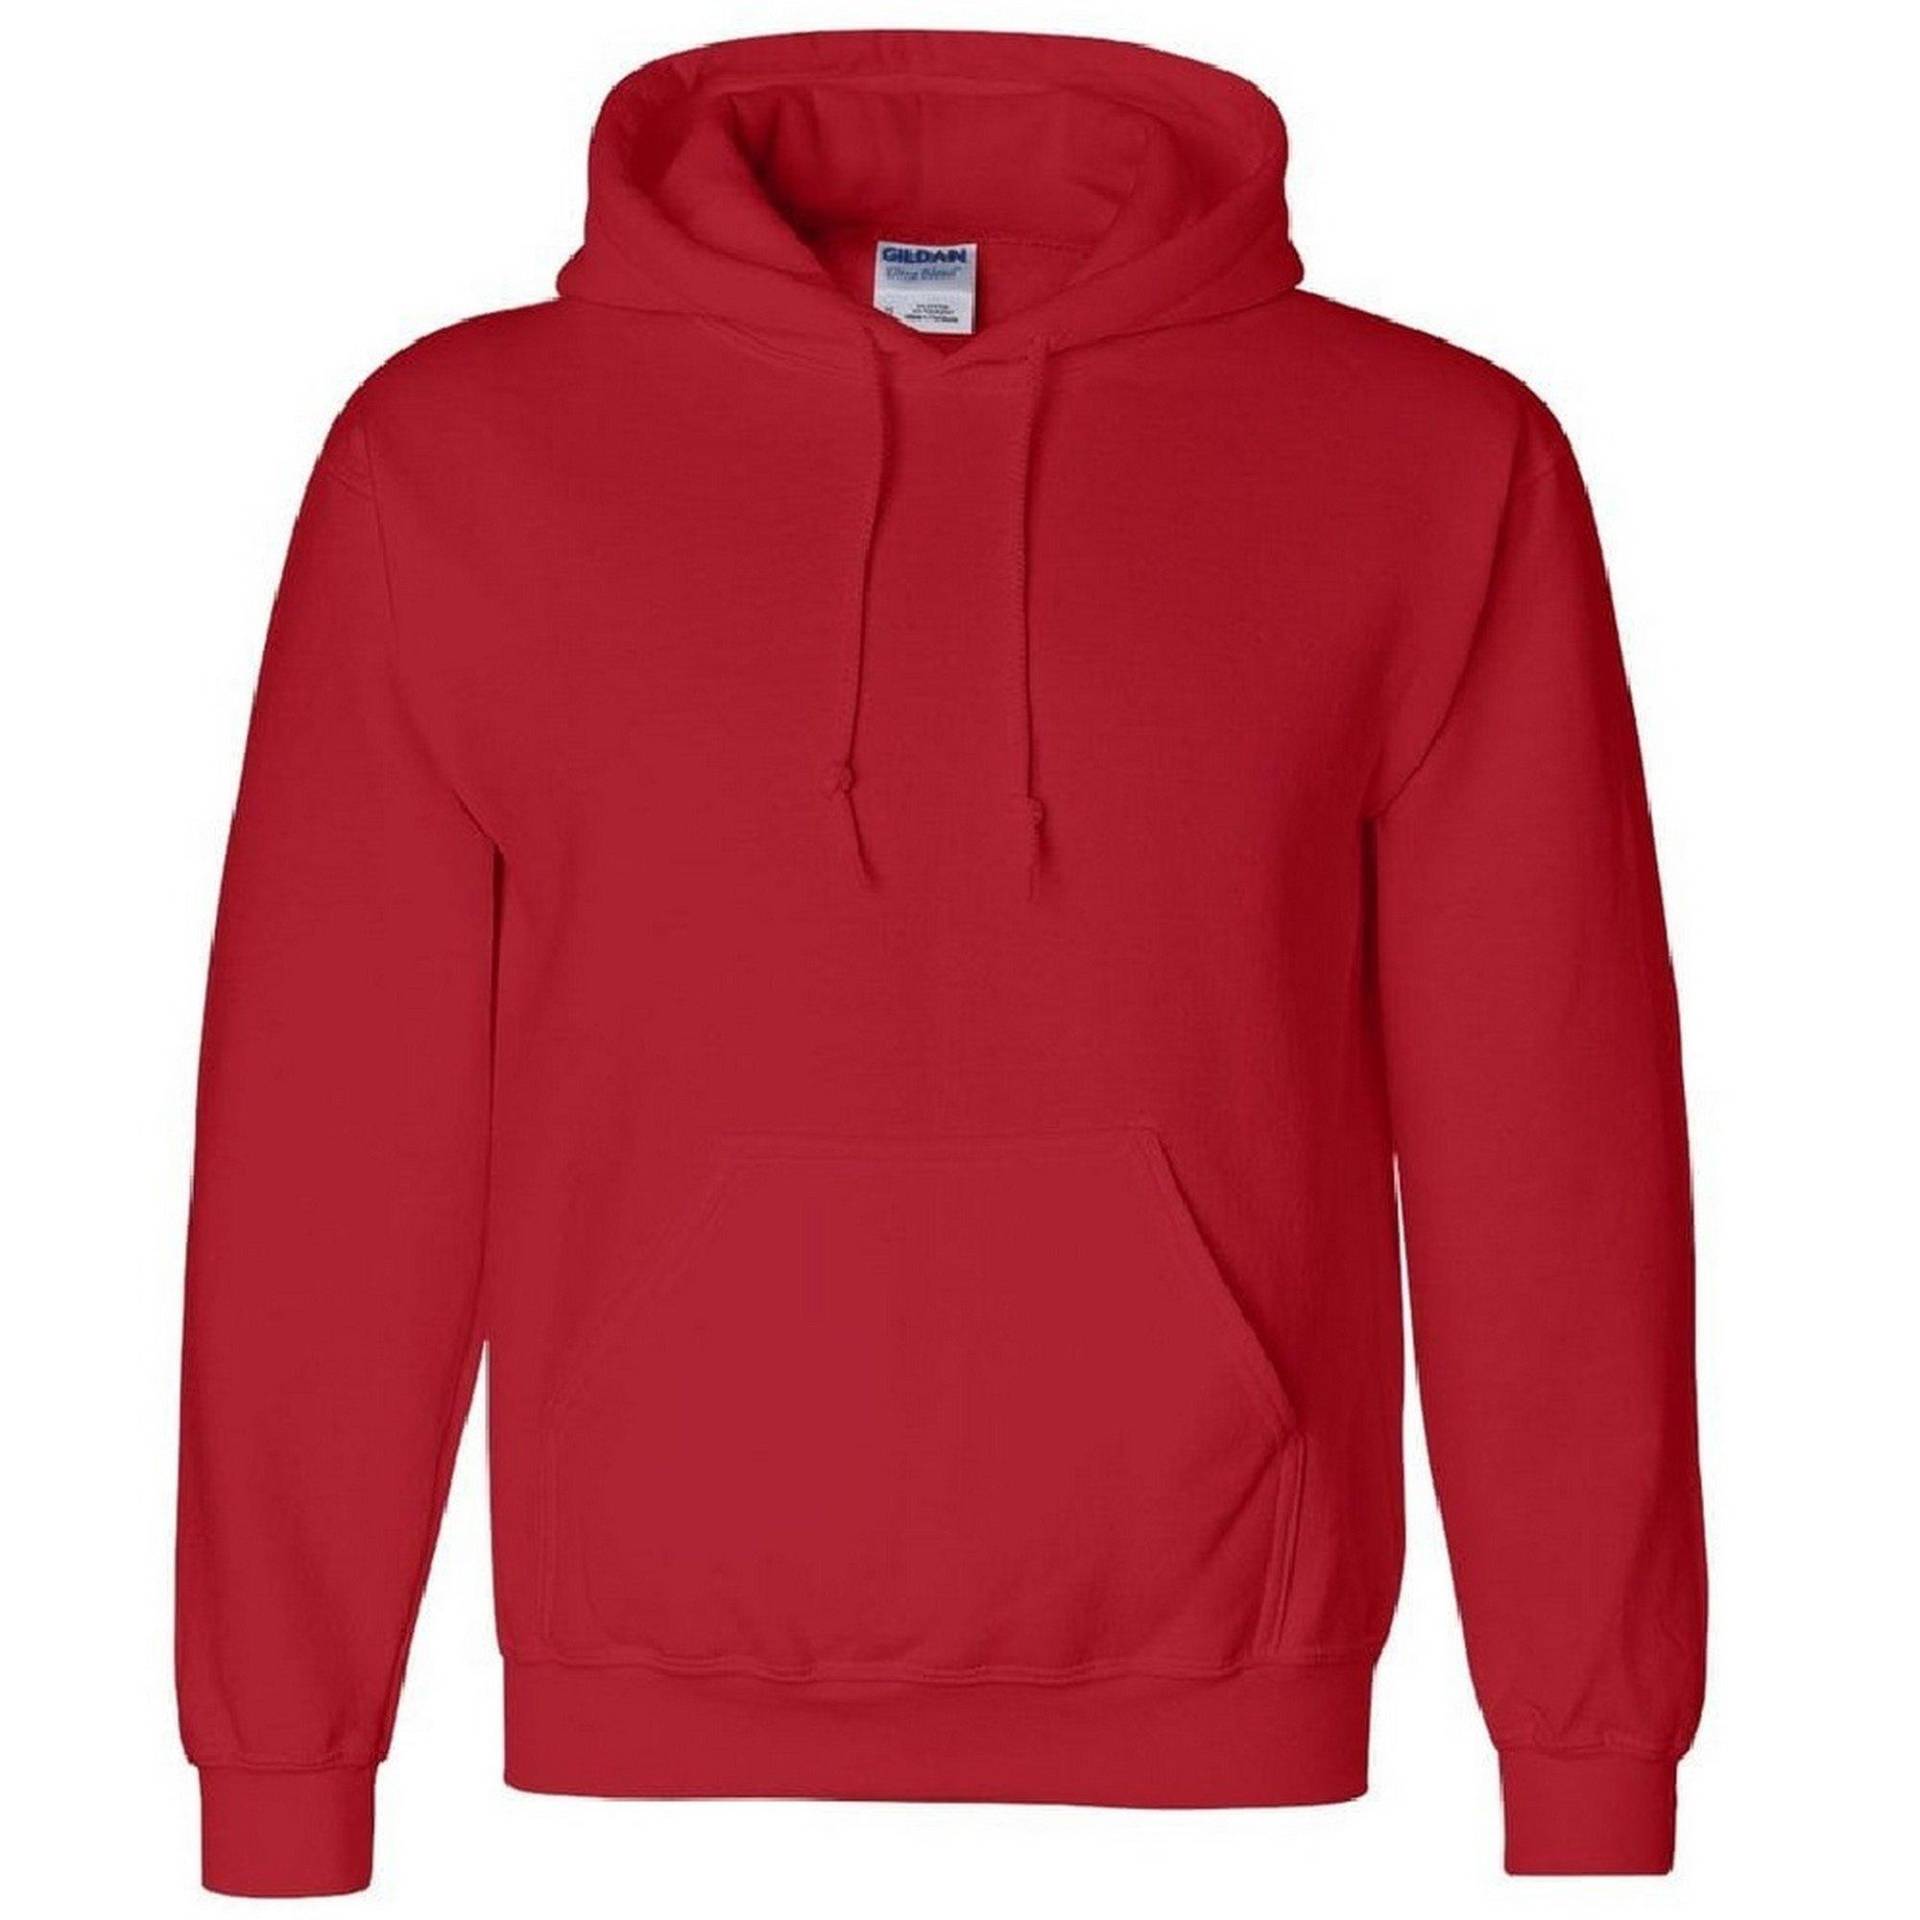 Heavy - Dry Blend Pullover Herren Rot Bunt XL von Gildan